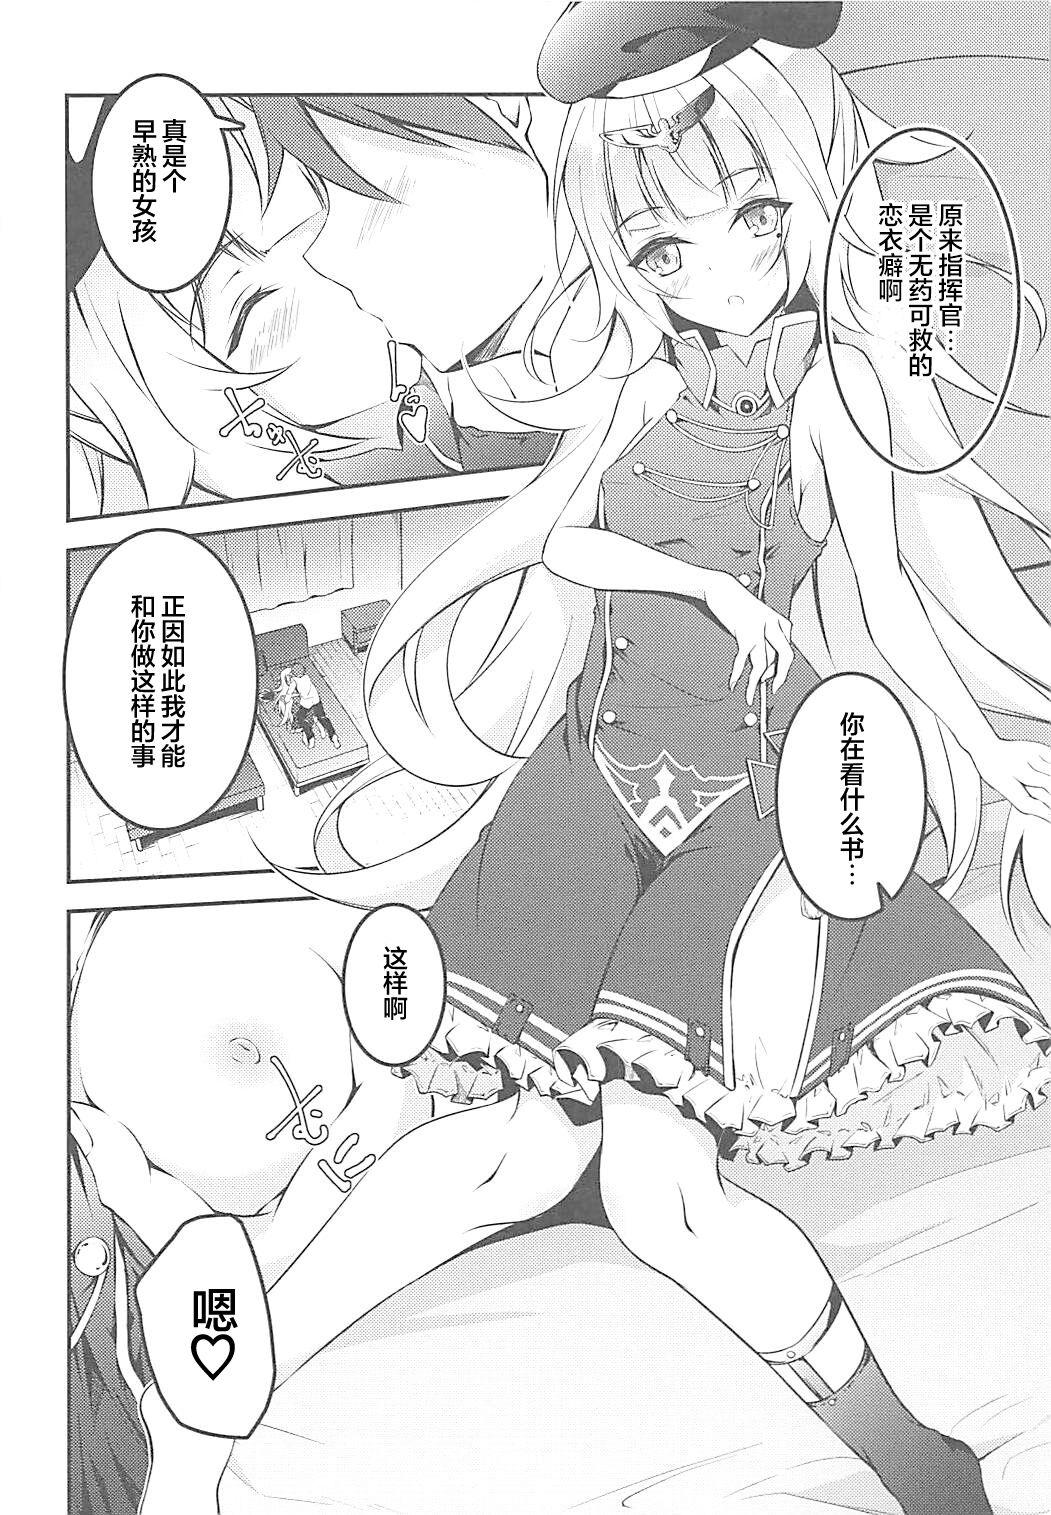 Pov Sex Anata Iro no Shiraito - Azur lane Petite Teenager - Page 6